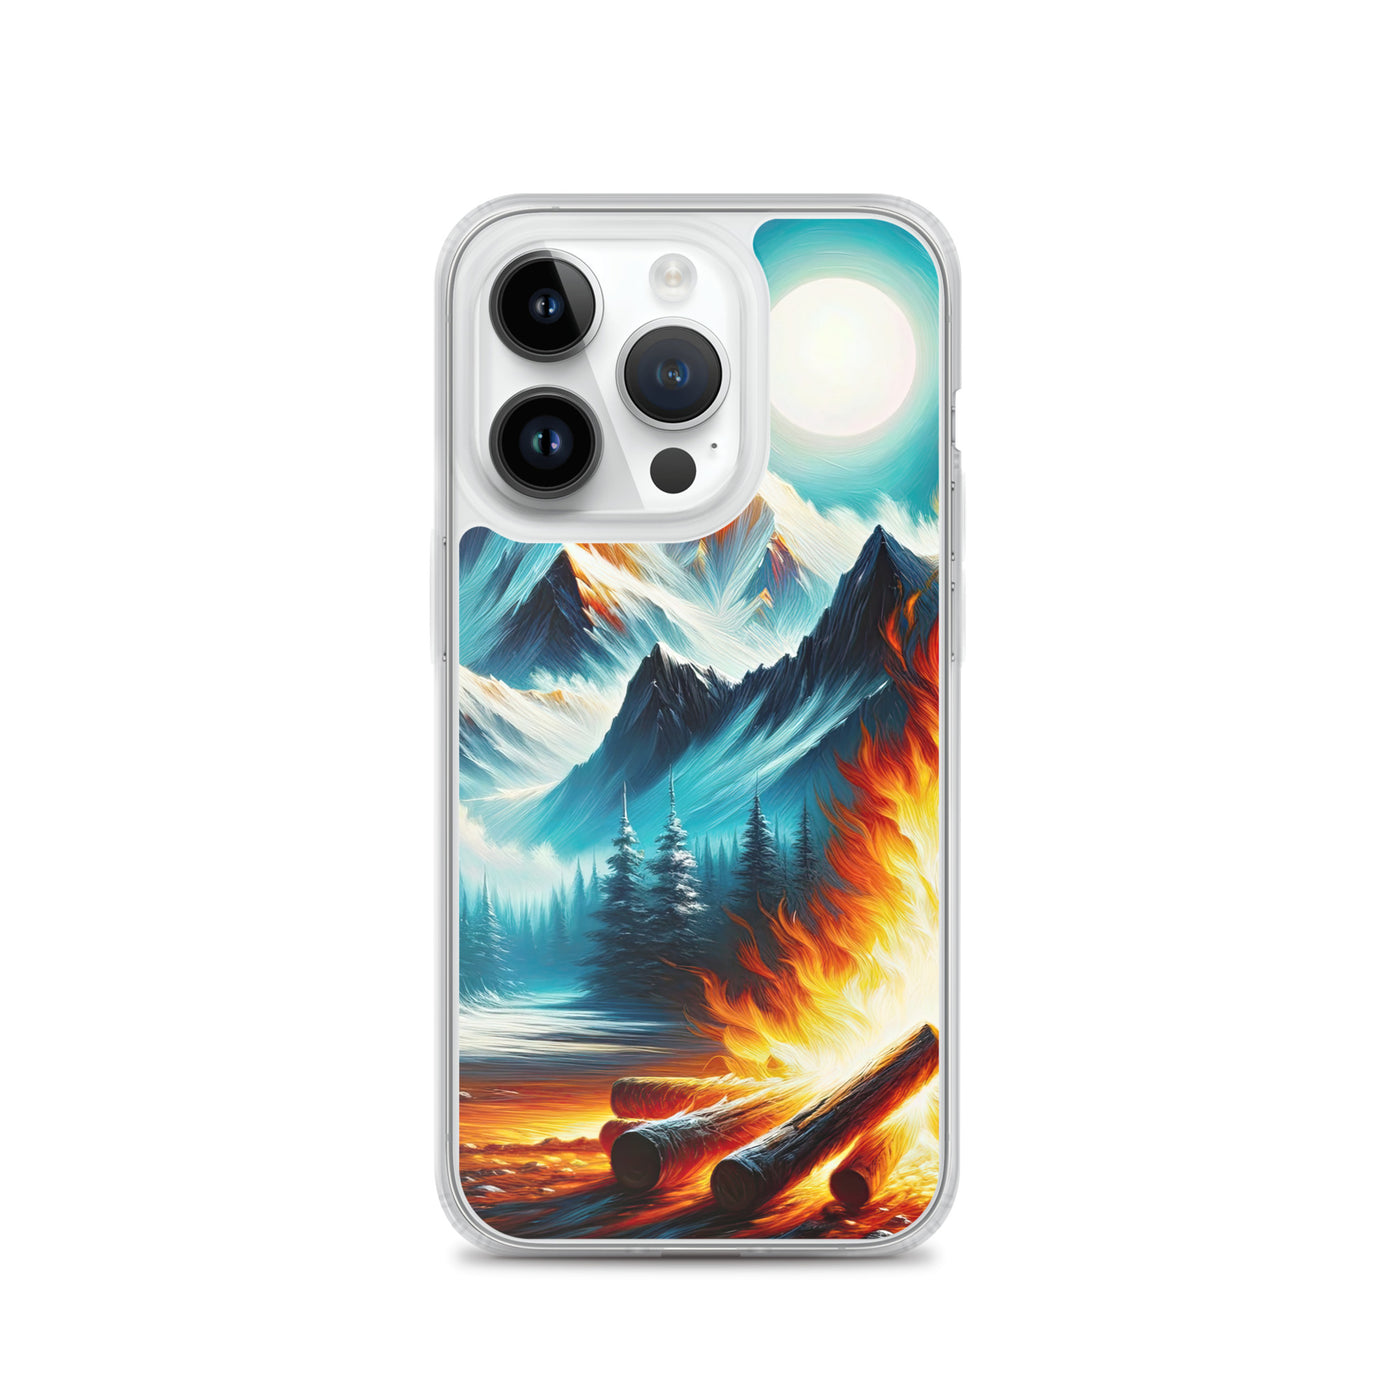 Ölgemälde von Feuer und Eis: Lagerfeuer und Alpen im Kontrast, warme Flammen - iPhone Schutzhülle (durchsichtig) camping xxx yyy zzz iPhone 14 Pro